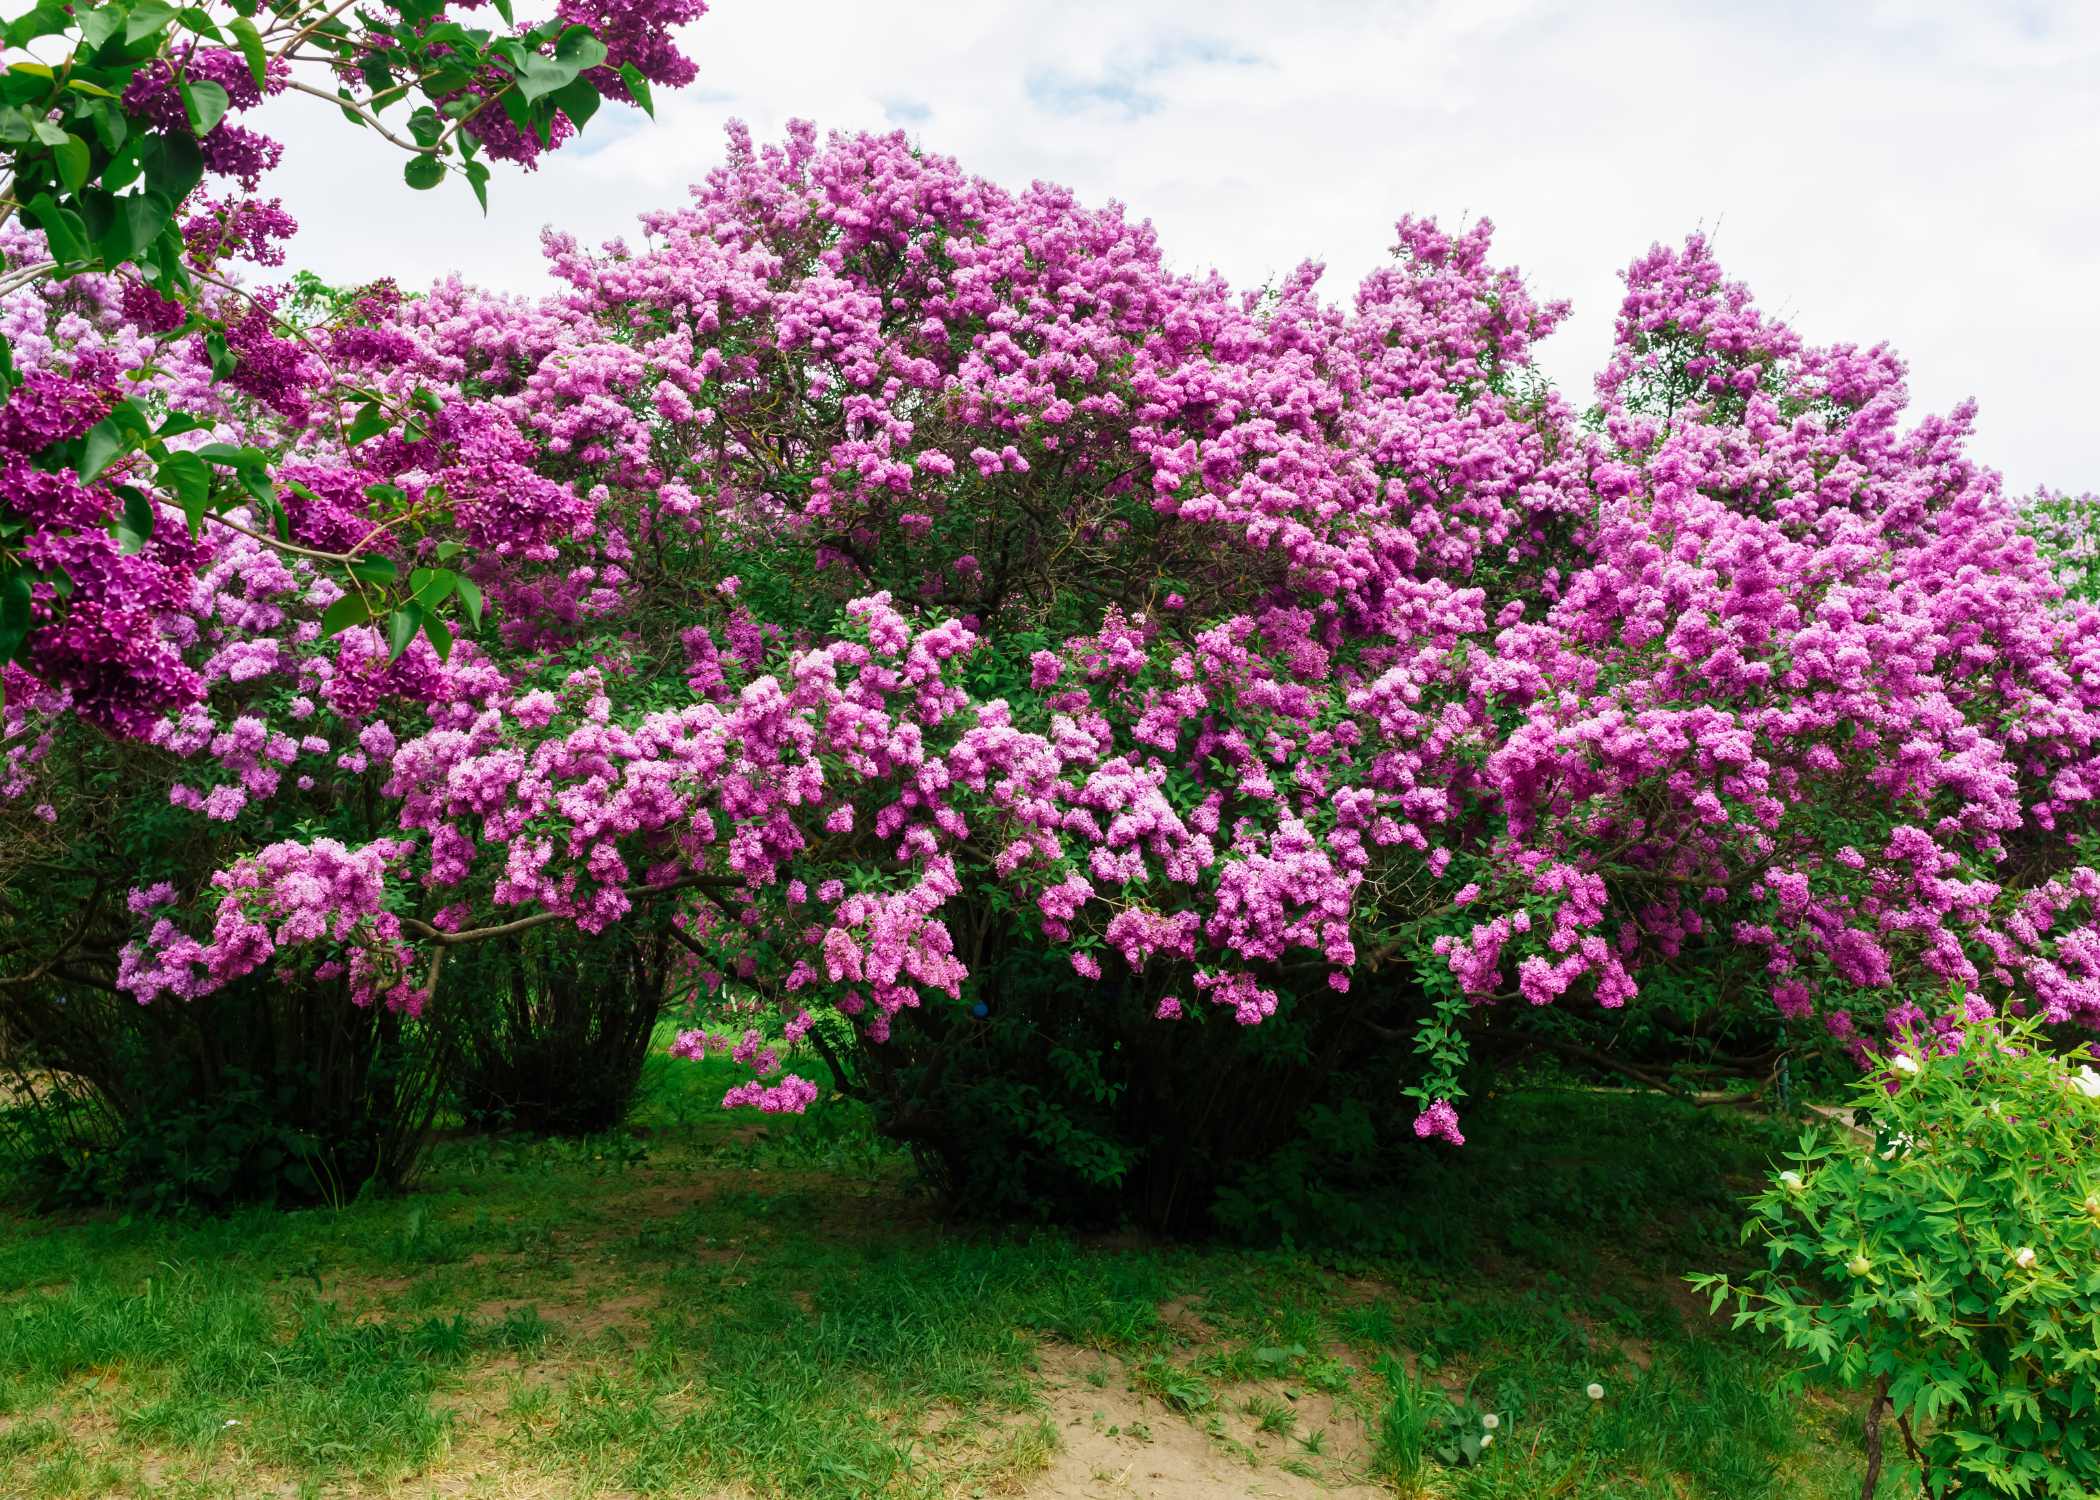 lilac shrub